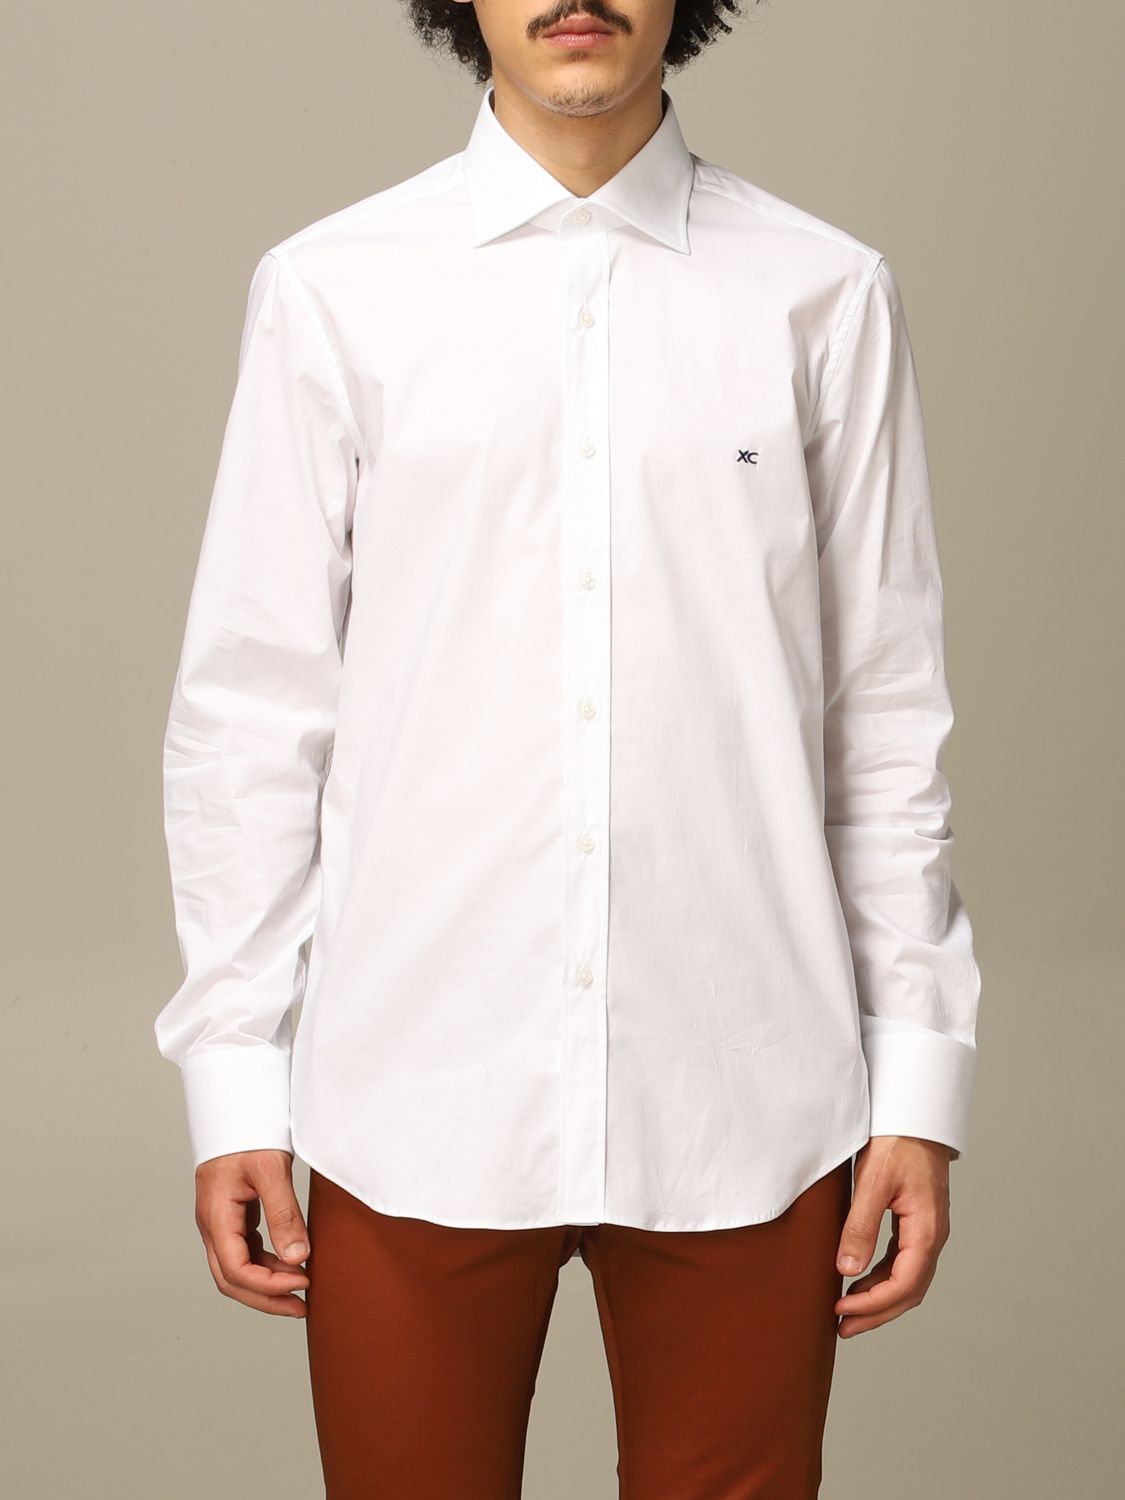 Xc Shirt XC Men colour White